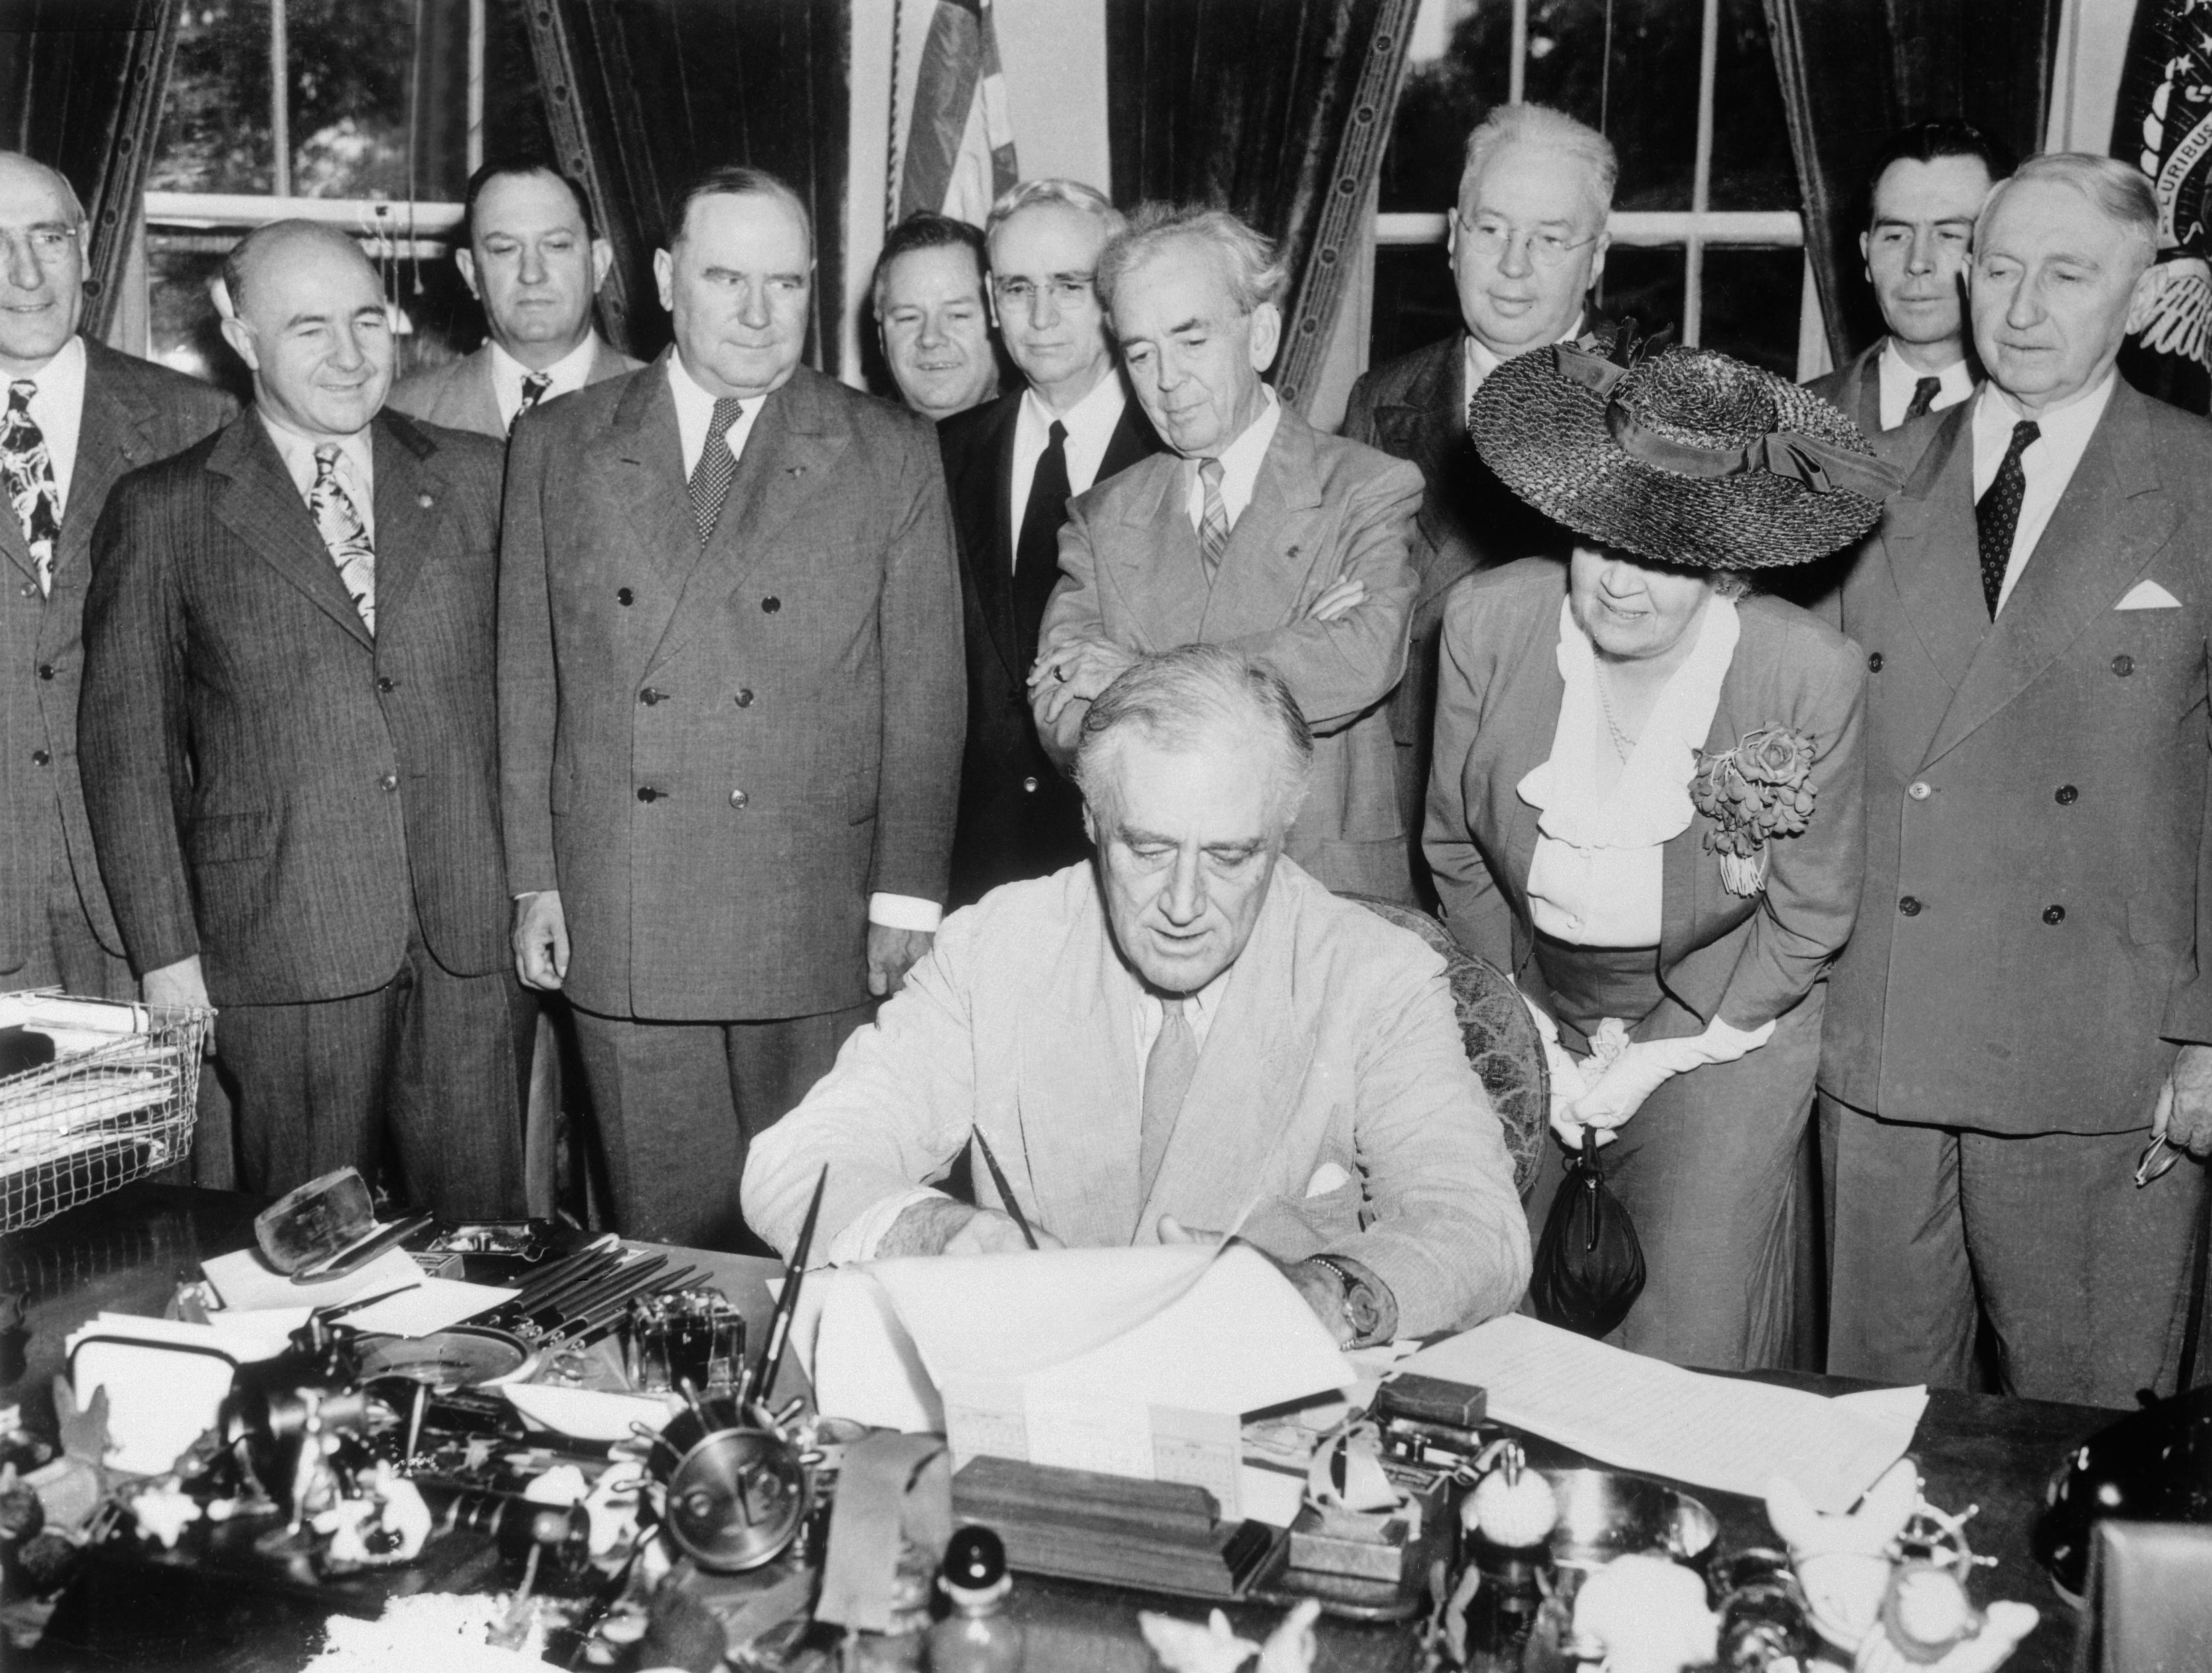 Präsident Franklin Roosevelt hat heute das GIB Bill of Rights unterzeichnet, das umfassende Vorteile für Veteranen des Zweiten Weltkriegs bietet.  An der Zeremonie nahmen Mitglieder des Senats und des Repräsentantenhauses sowie Mitglieder der American Legion und Veterans of Foreign Wars teil